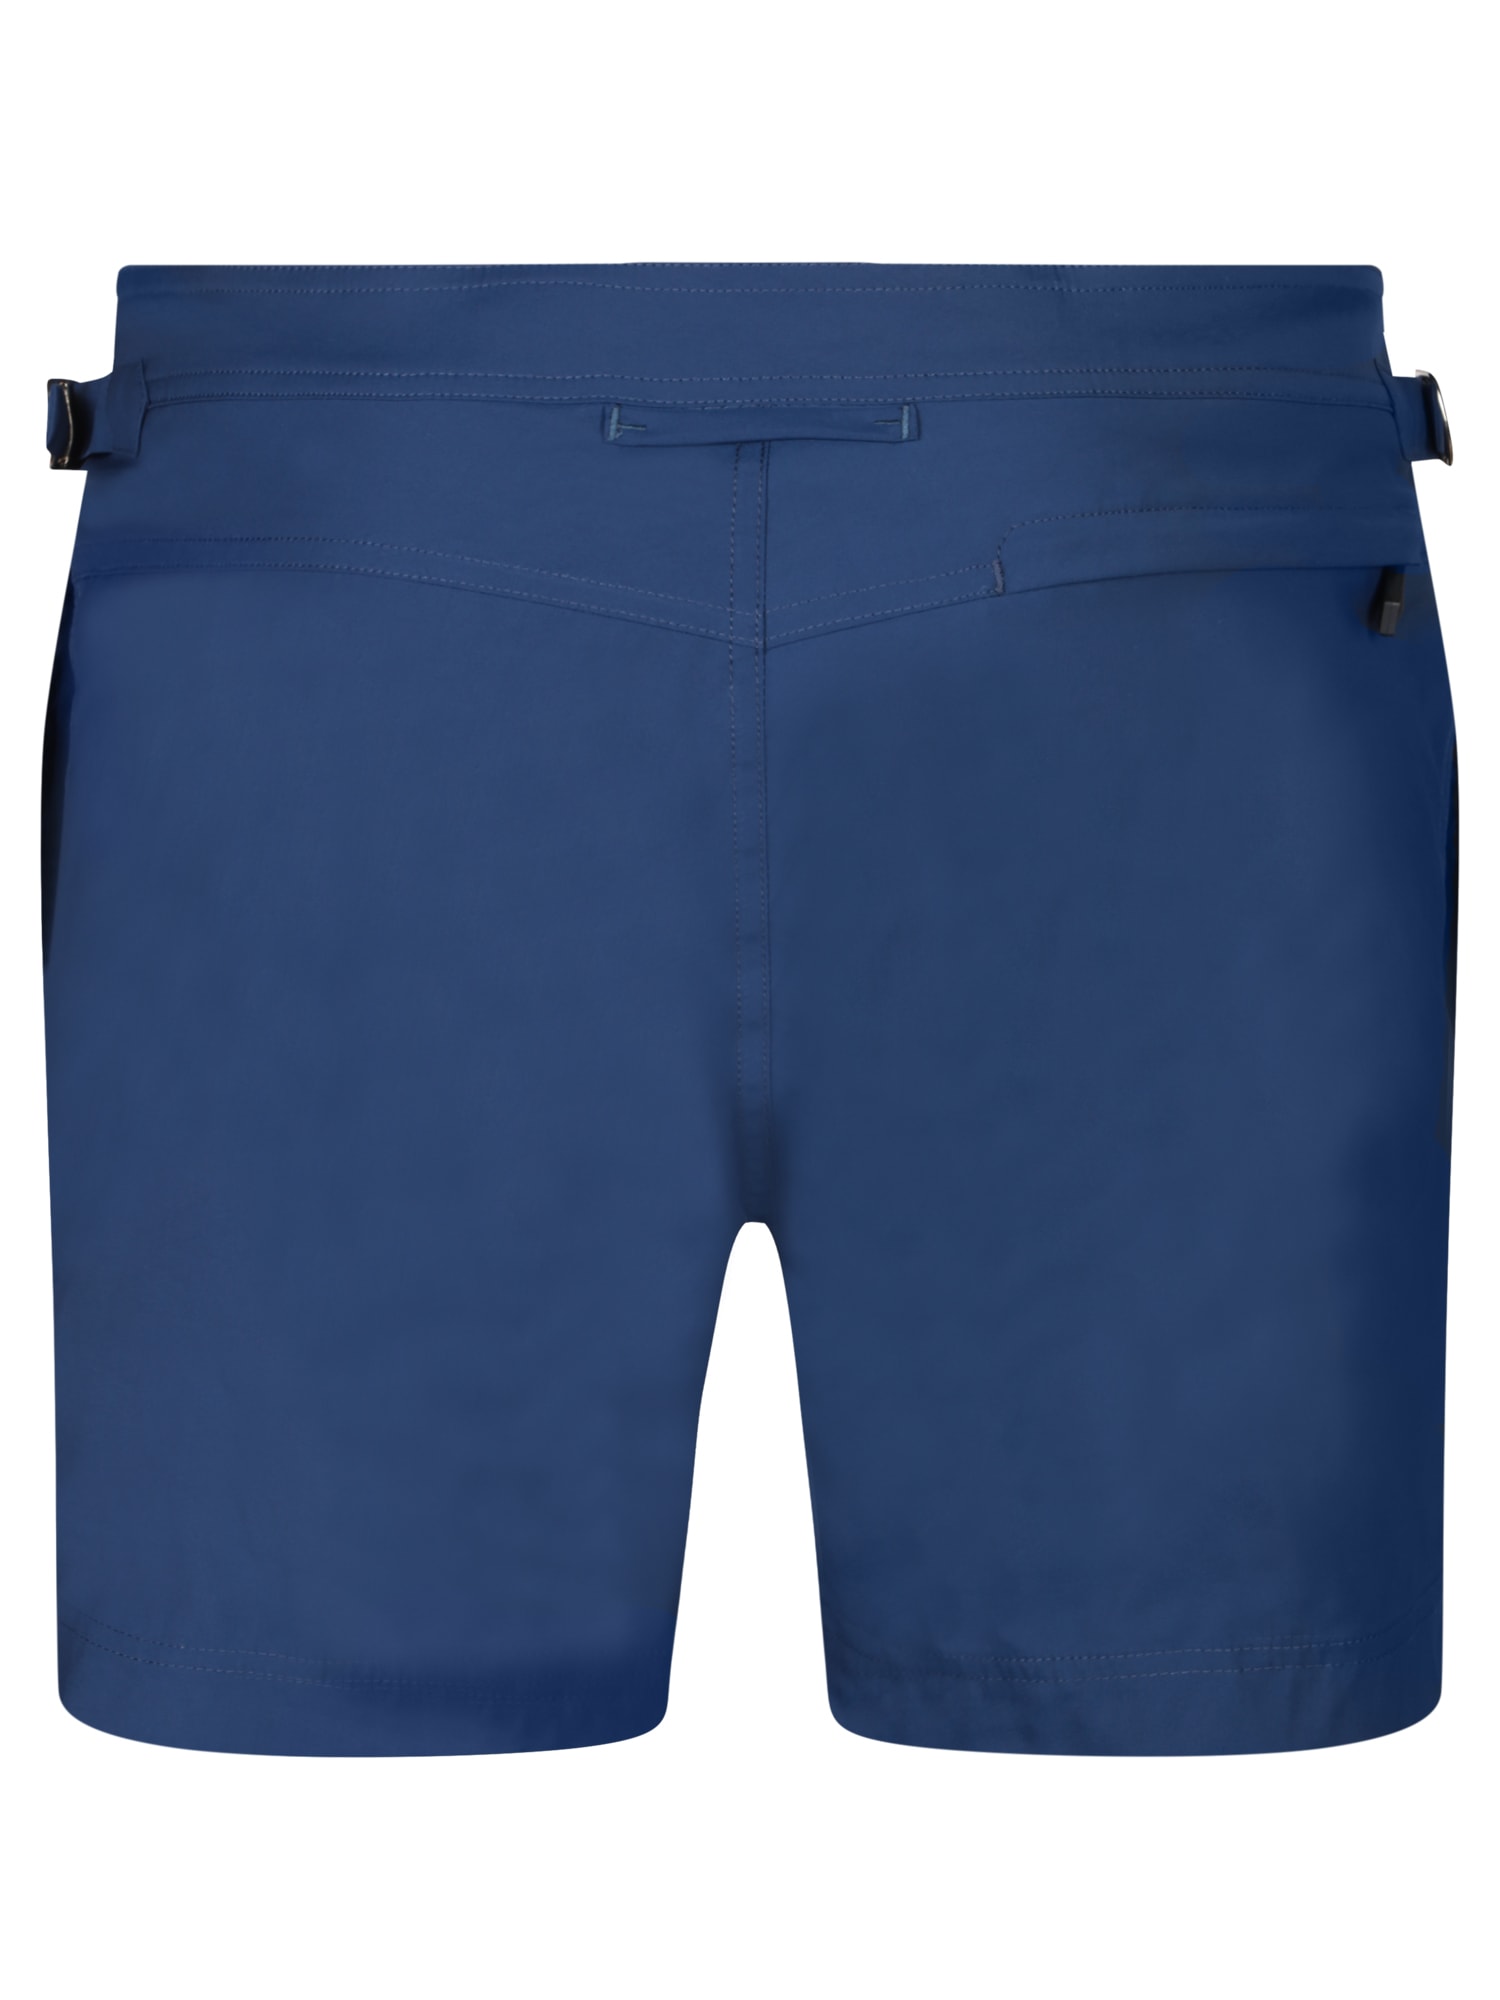 Shop Tom Ford Basic Dark Blue Swimsuit